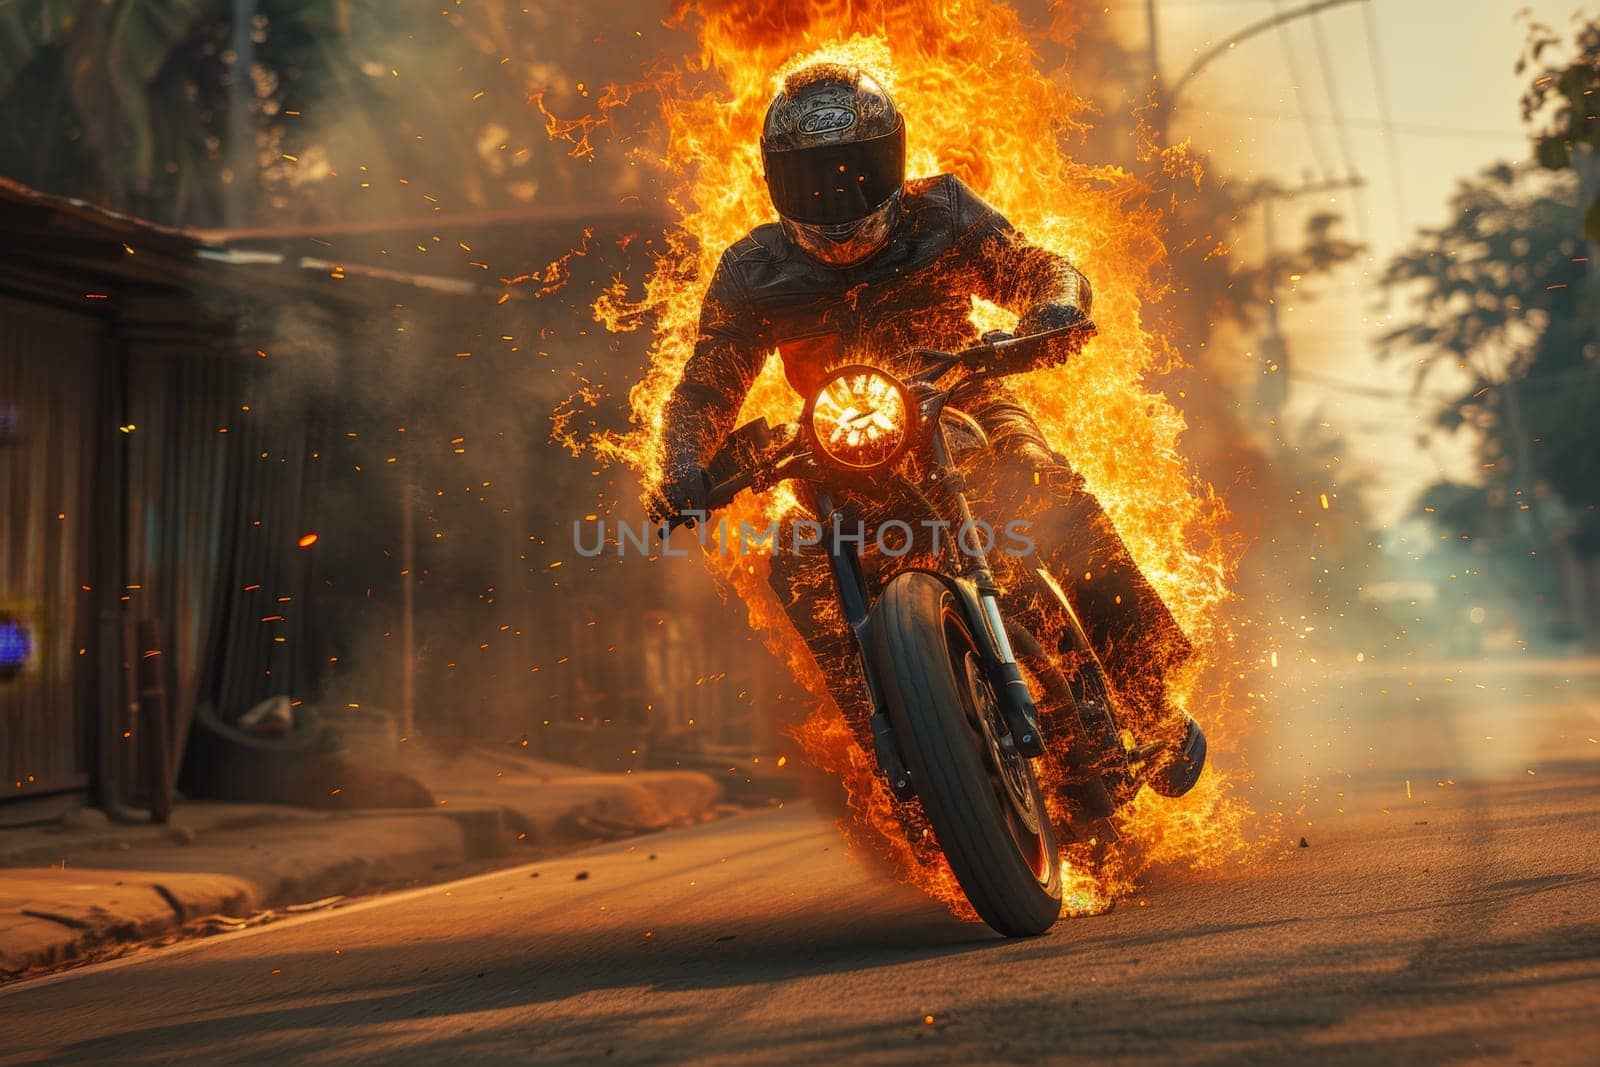 A motorcycle rider on a fiery bike racing down a rural road in scorching heat, Biker in hot summer by nijieimu